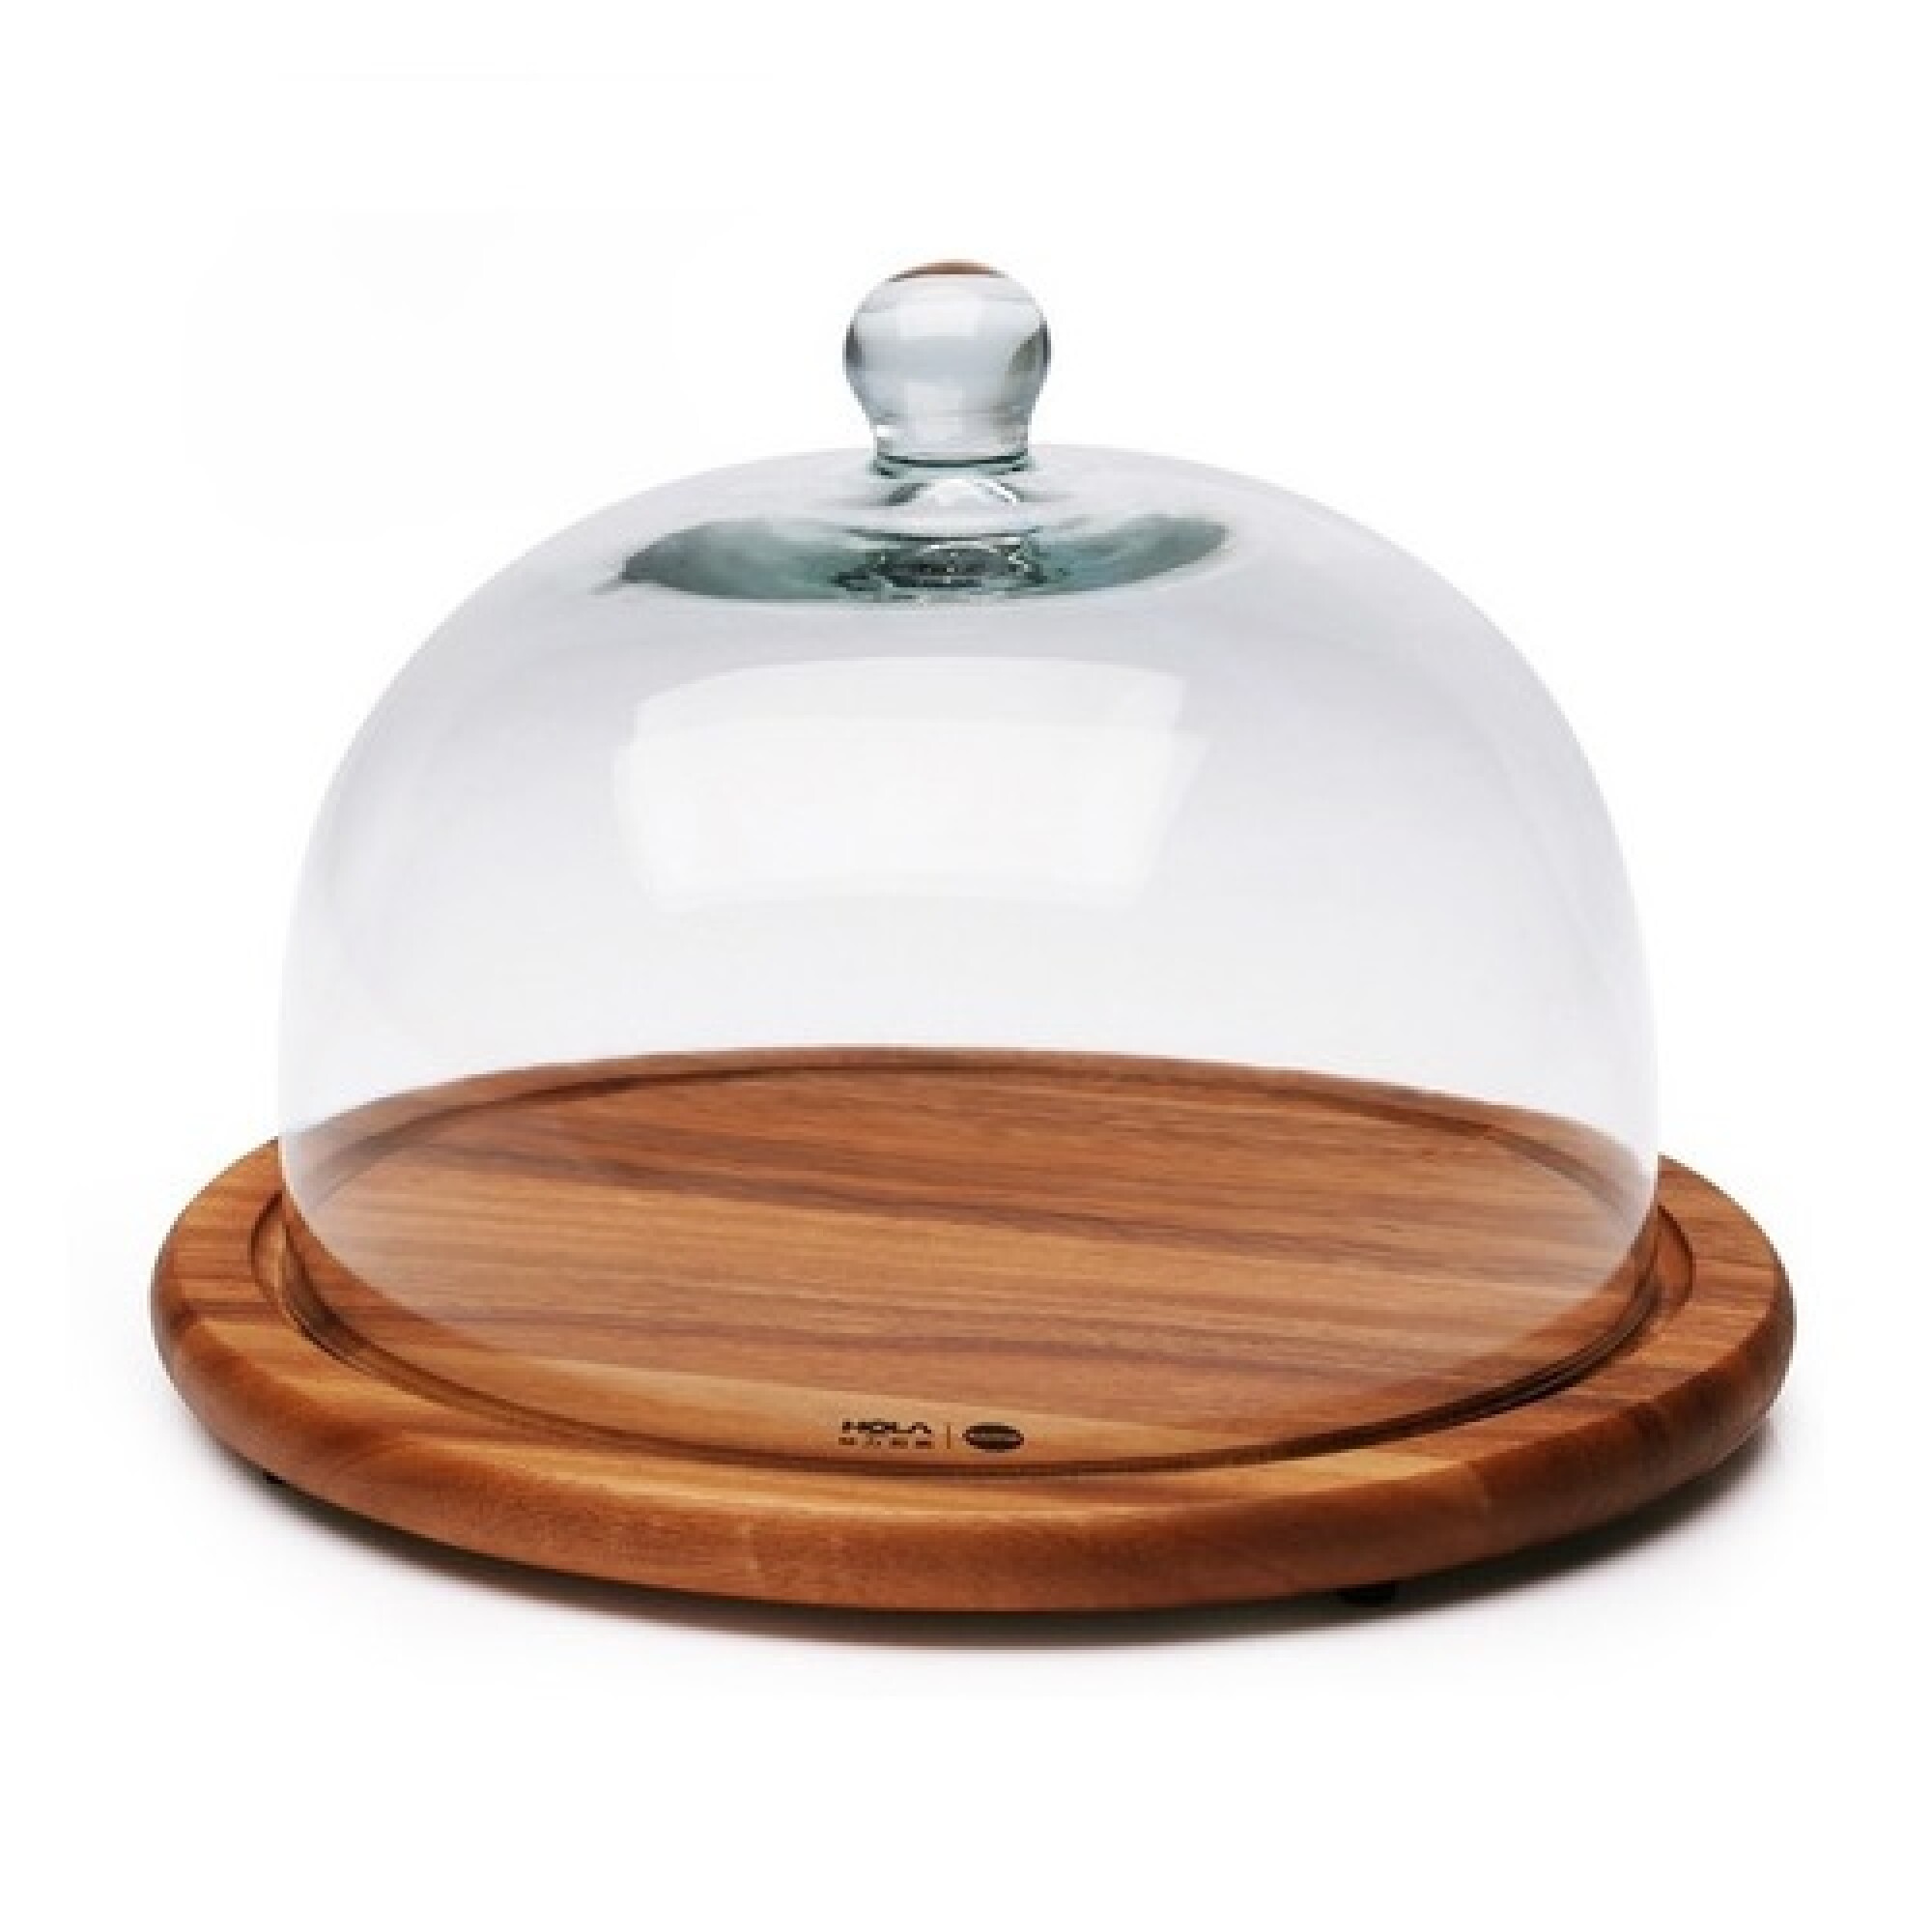 Quesera de madera con campana de vidrio — Amo cocinar